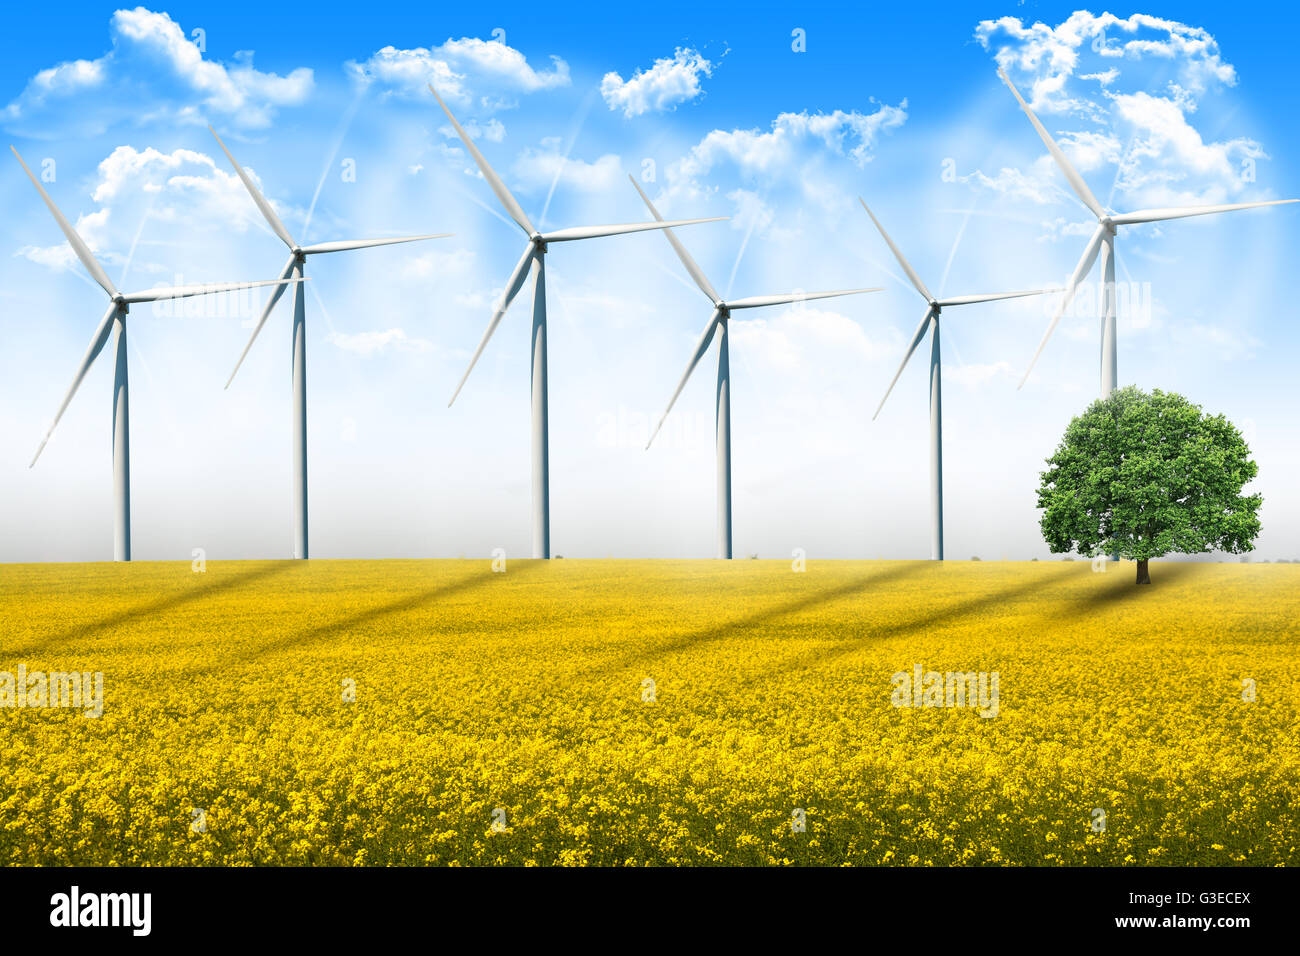 Las turbinas de energía eólica girando en terreno agrícola en un día de verano Foto de stock